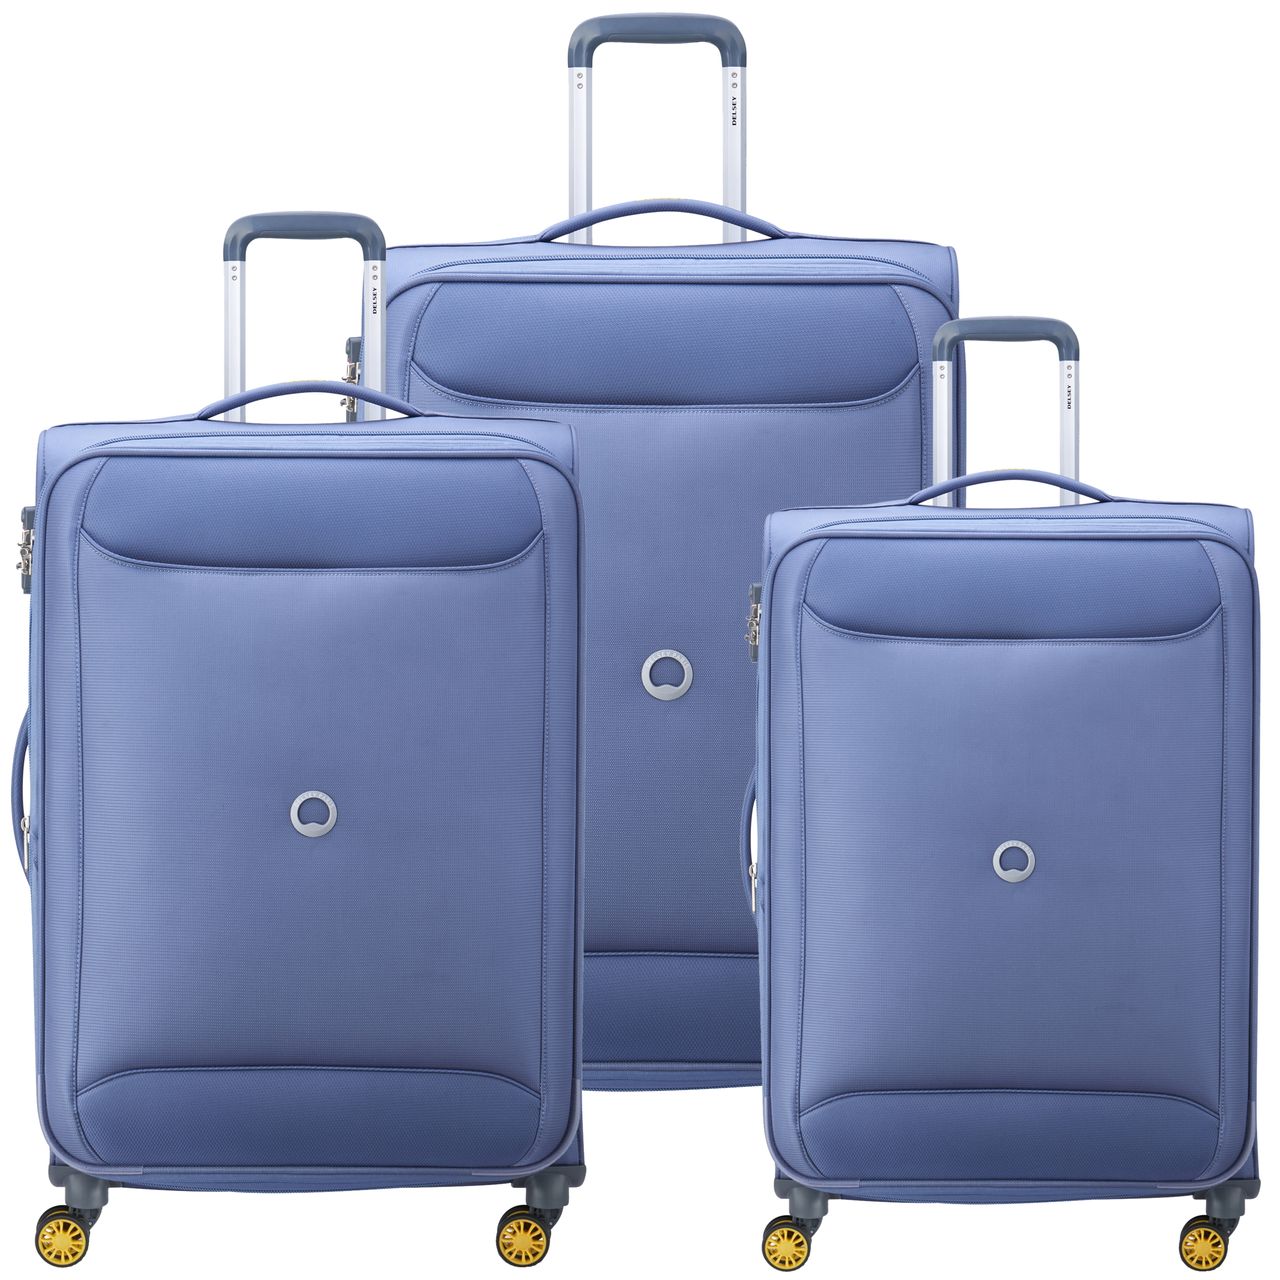 مجموعه 3 عددی چمدان دلسی مدل CHARTREUSE کد 3673980